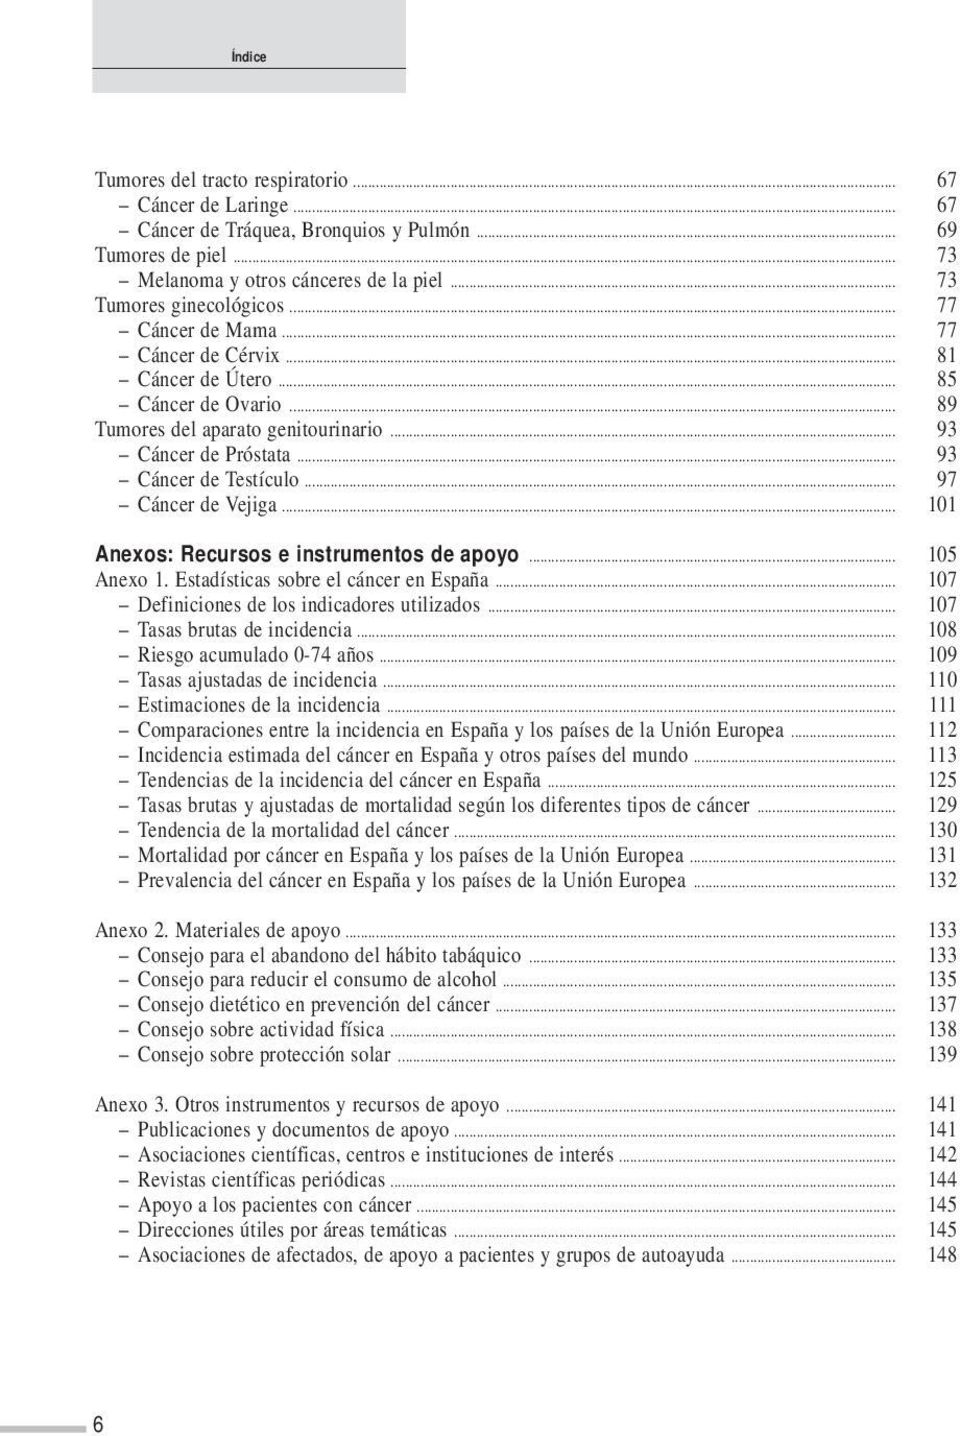 .. 97 Cáncer de Vejiga... 101 Anexos: Recursos e instrumentos de apoyo... 105 Anexo 1. Estadísticas sobre el cáncer en España... 107 Definiciones de los indicadores utilizados.